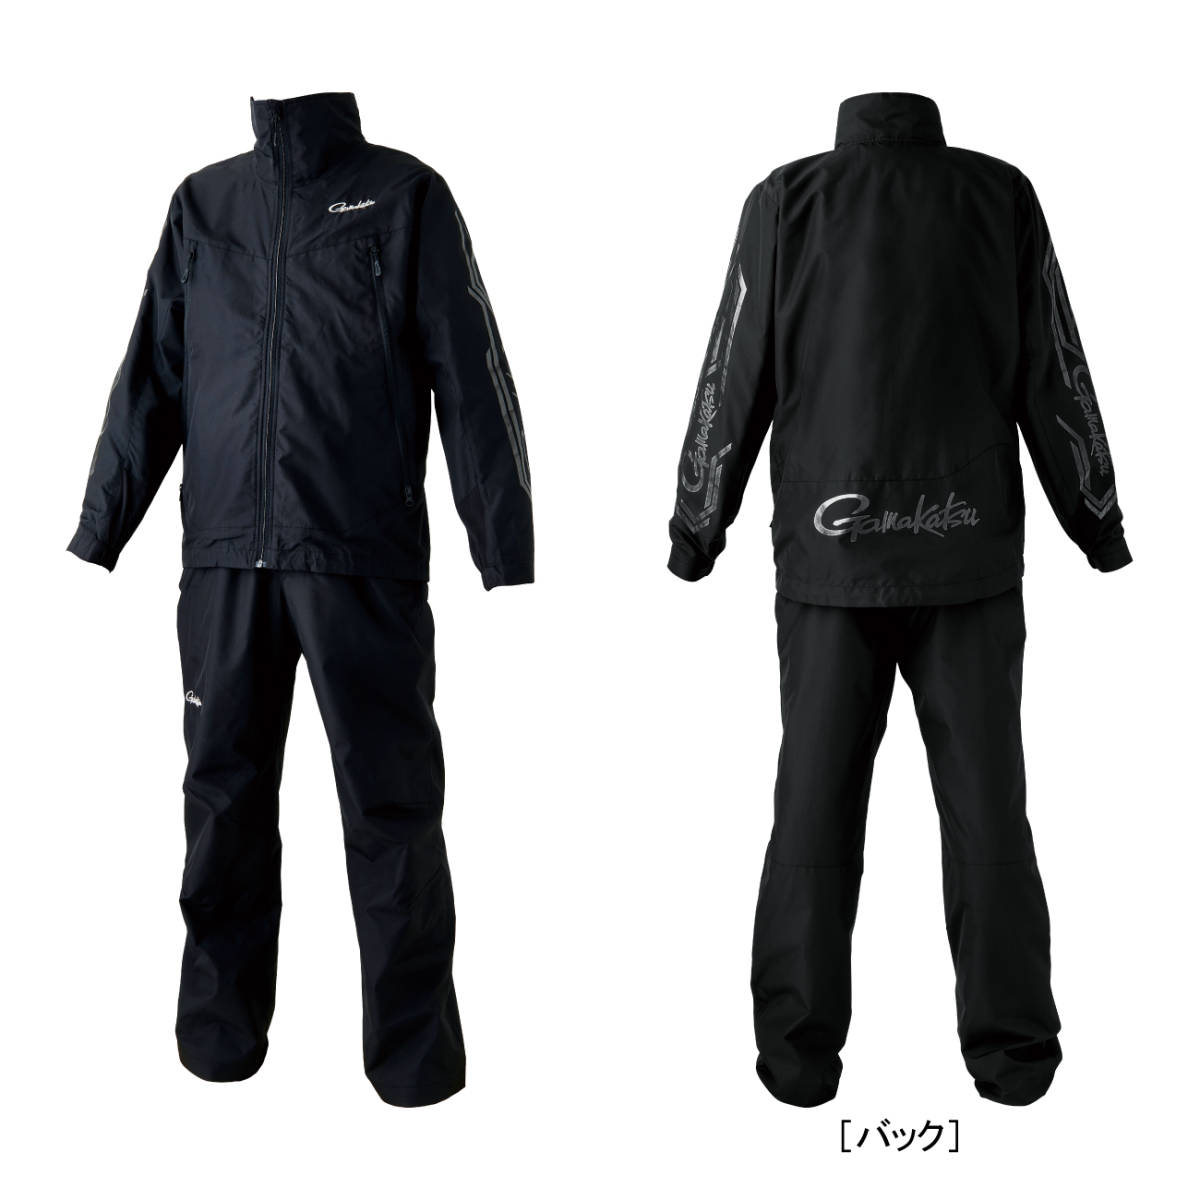  Gamakatsu Wind breaker suit GM3722* black black *L size 